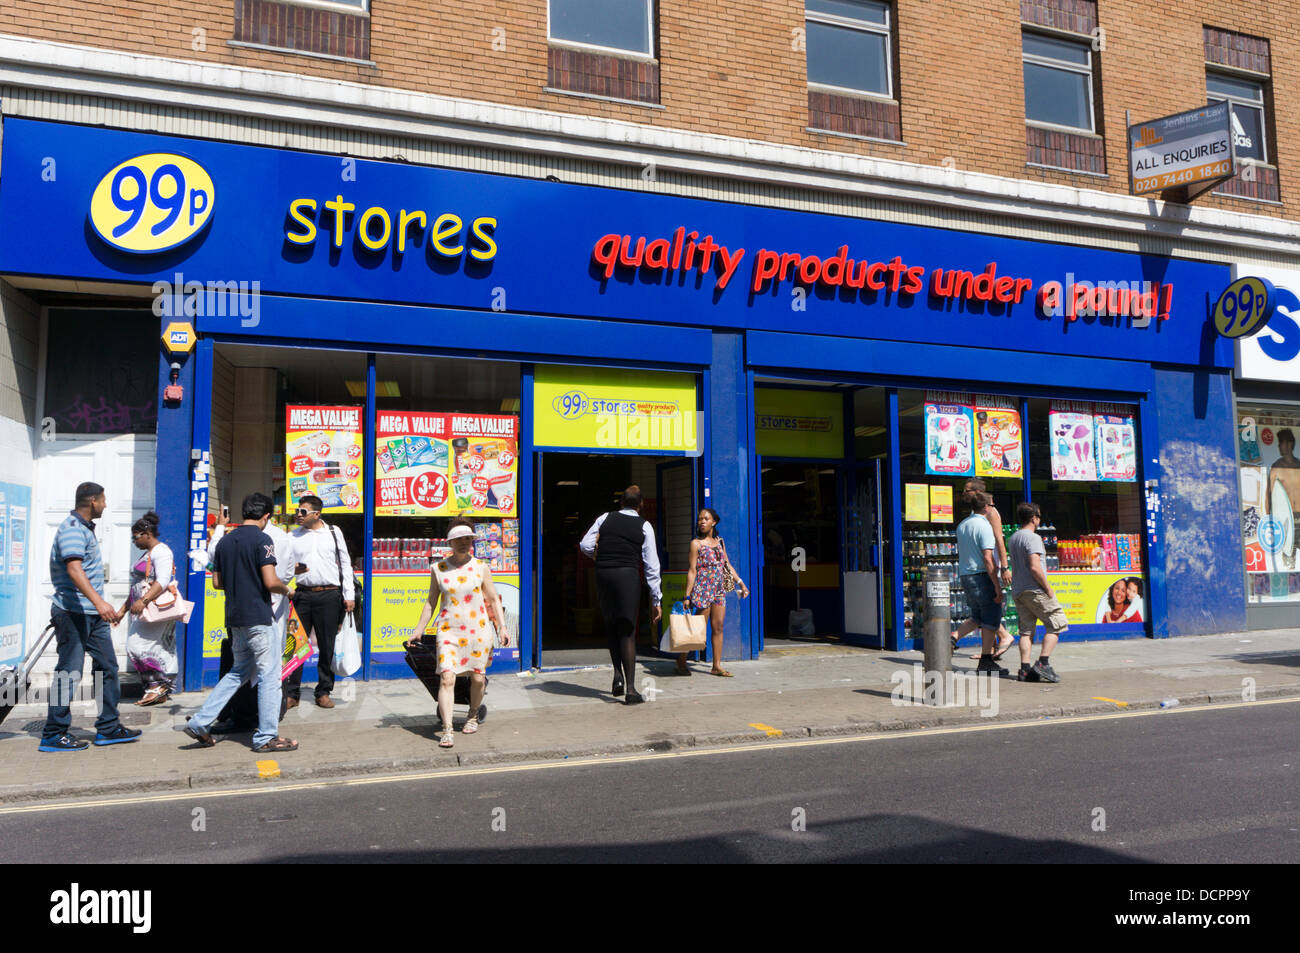 99p memorizza lo sconto shop in Rye Lane, Peckham, Londra del sud Foto Stock